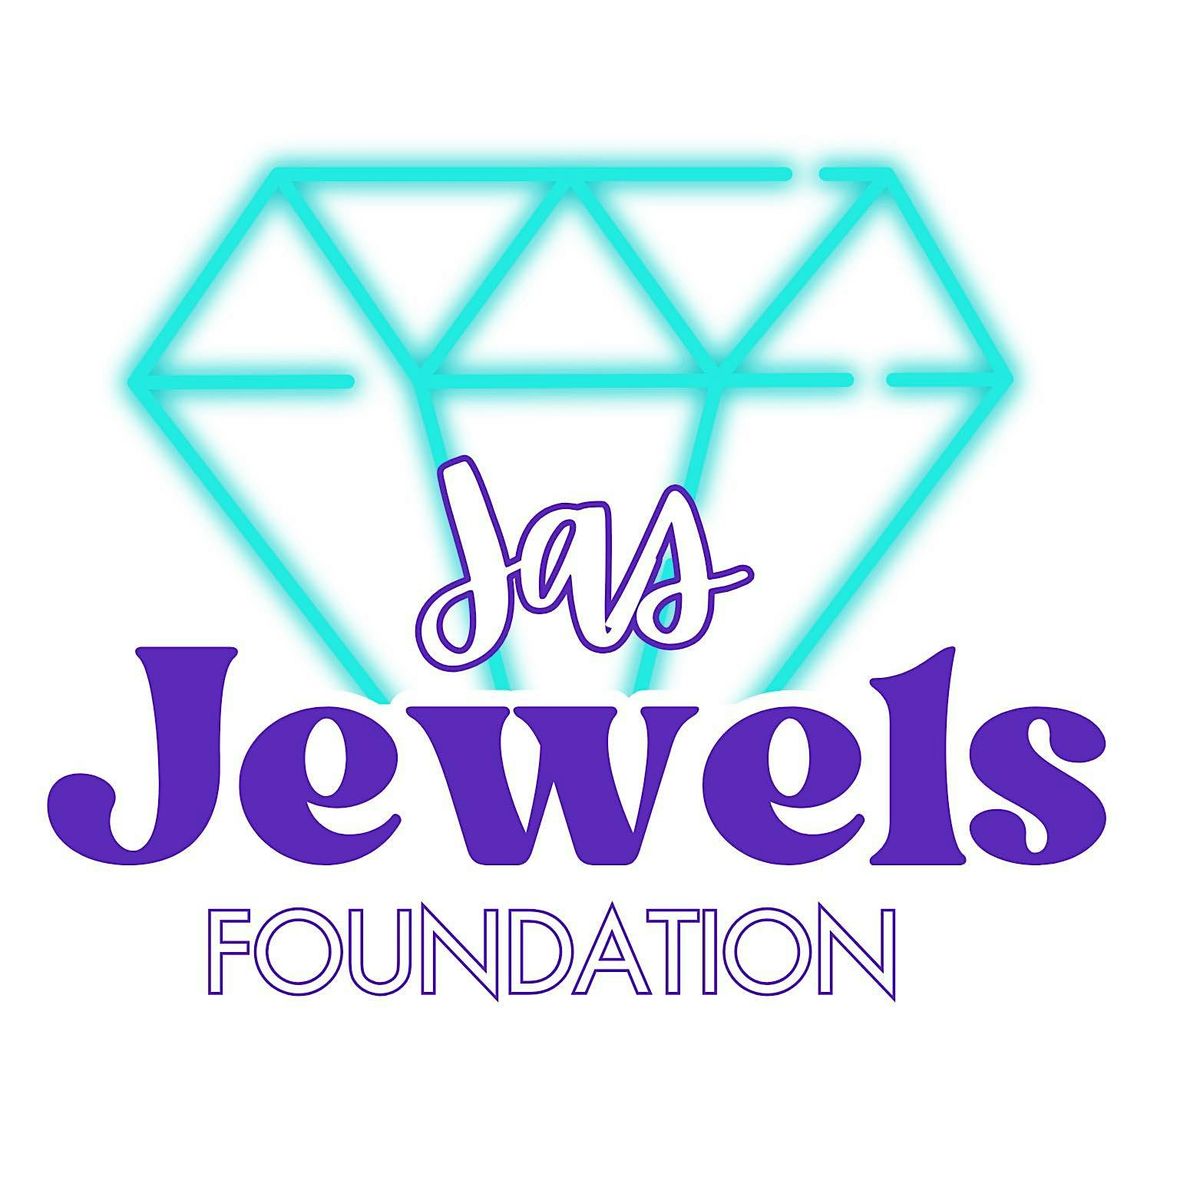 Jas Jewels Foundation Fundraising ShinDig!